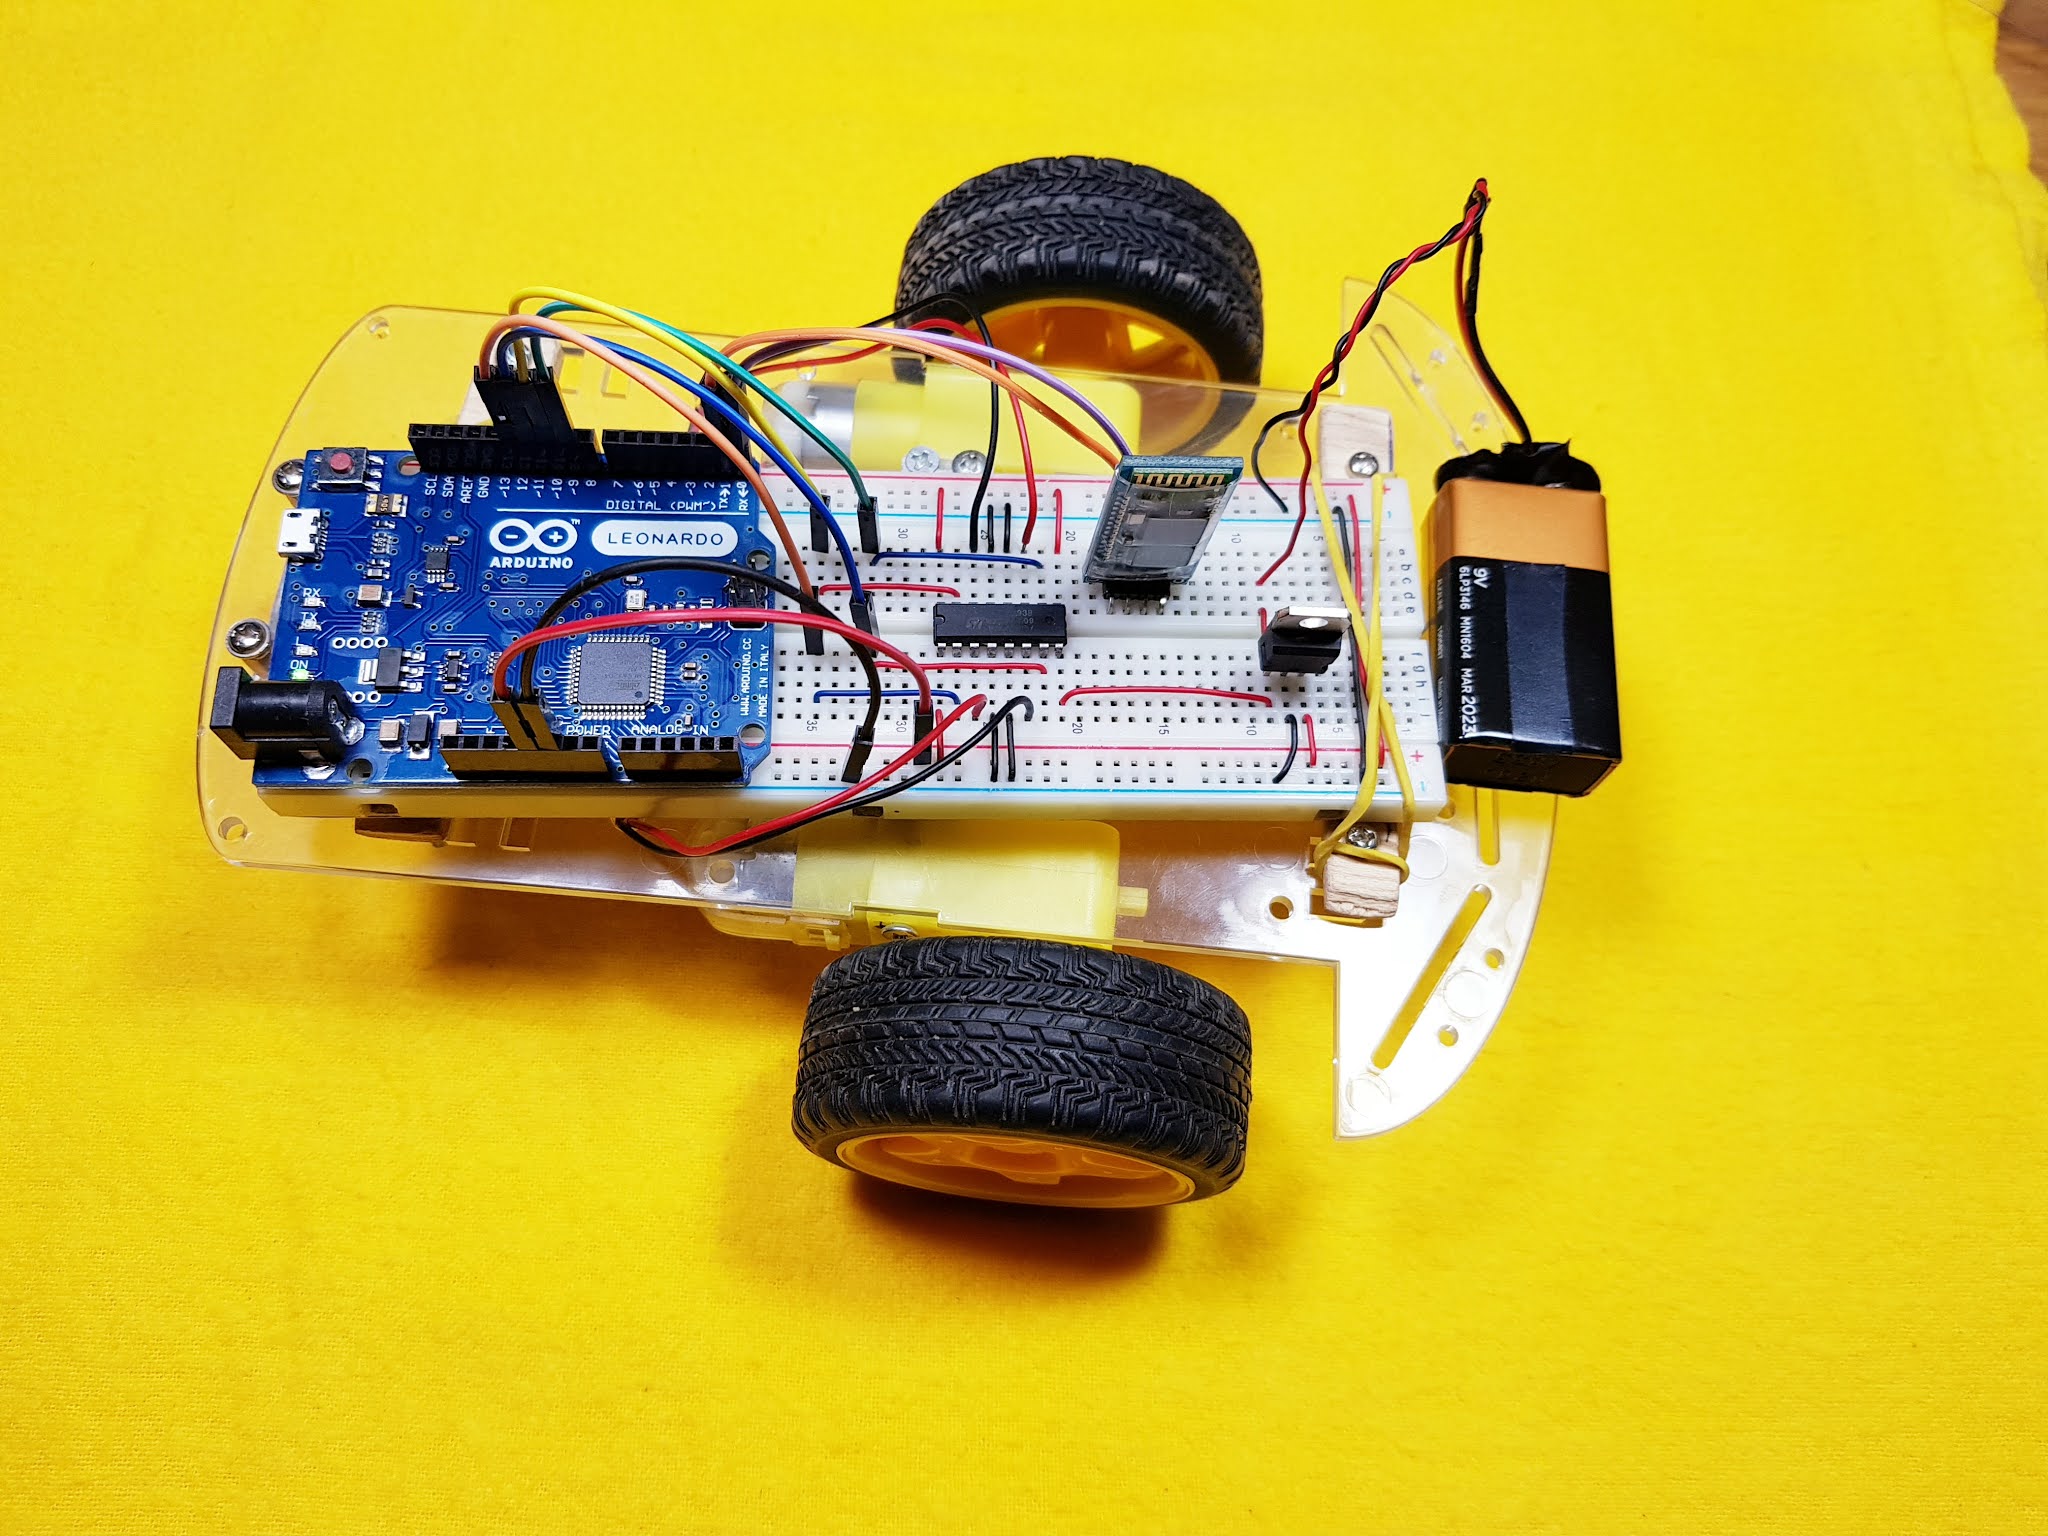 Carrito control remoto con Arduino / Bluetooth / Android, circuito en Protoboard y en Baquelita.